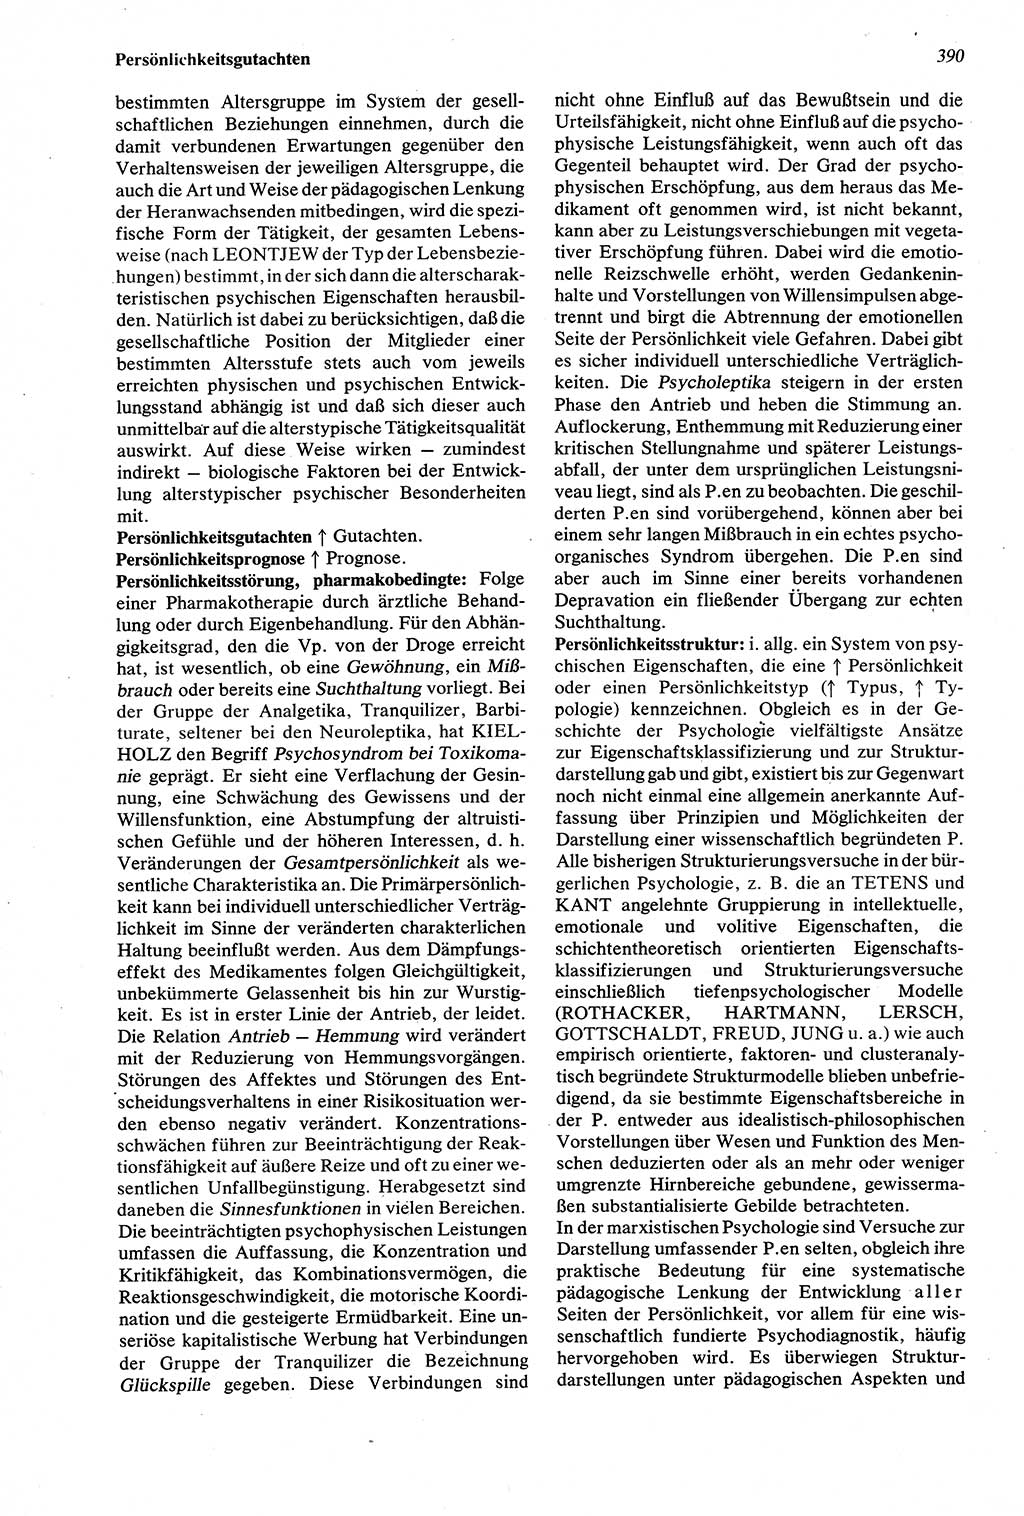 Wörterbuch der Psychologie [Deutsche Demokratische Republik (DDR)] 1976, Seite 390 (Wb. Psych. DDR 1976, S. 390)